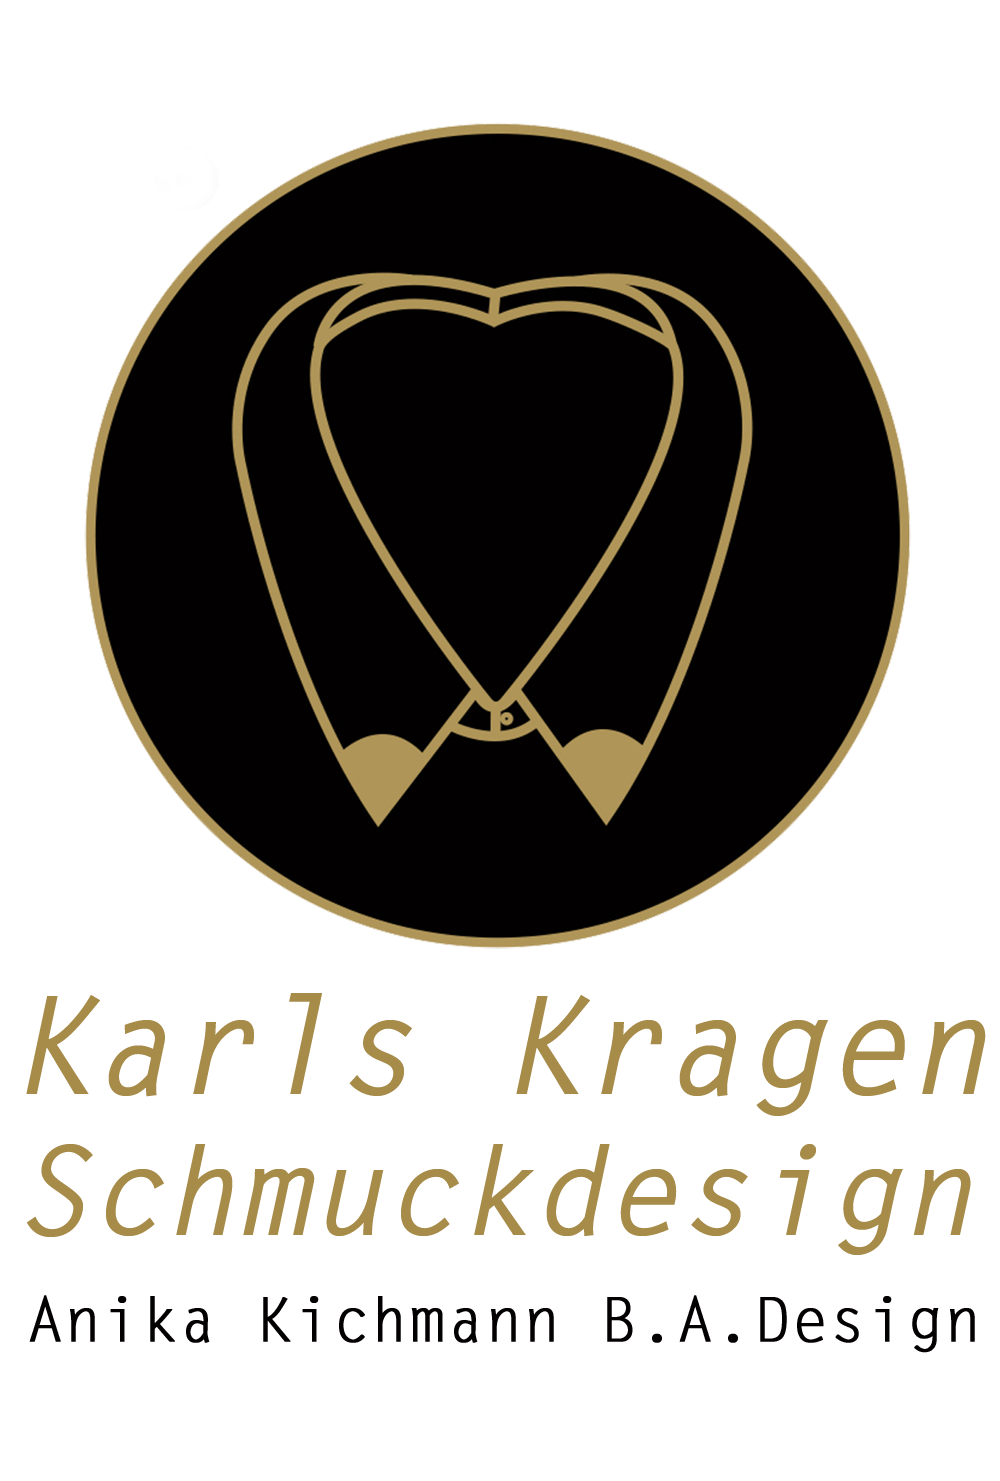 Karls Kragen Schmuckdesign